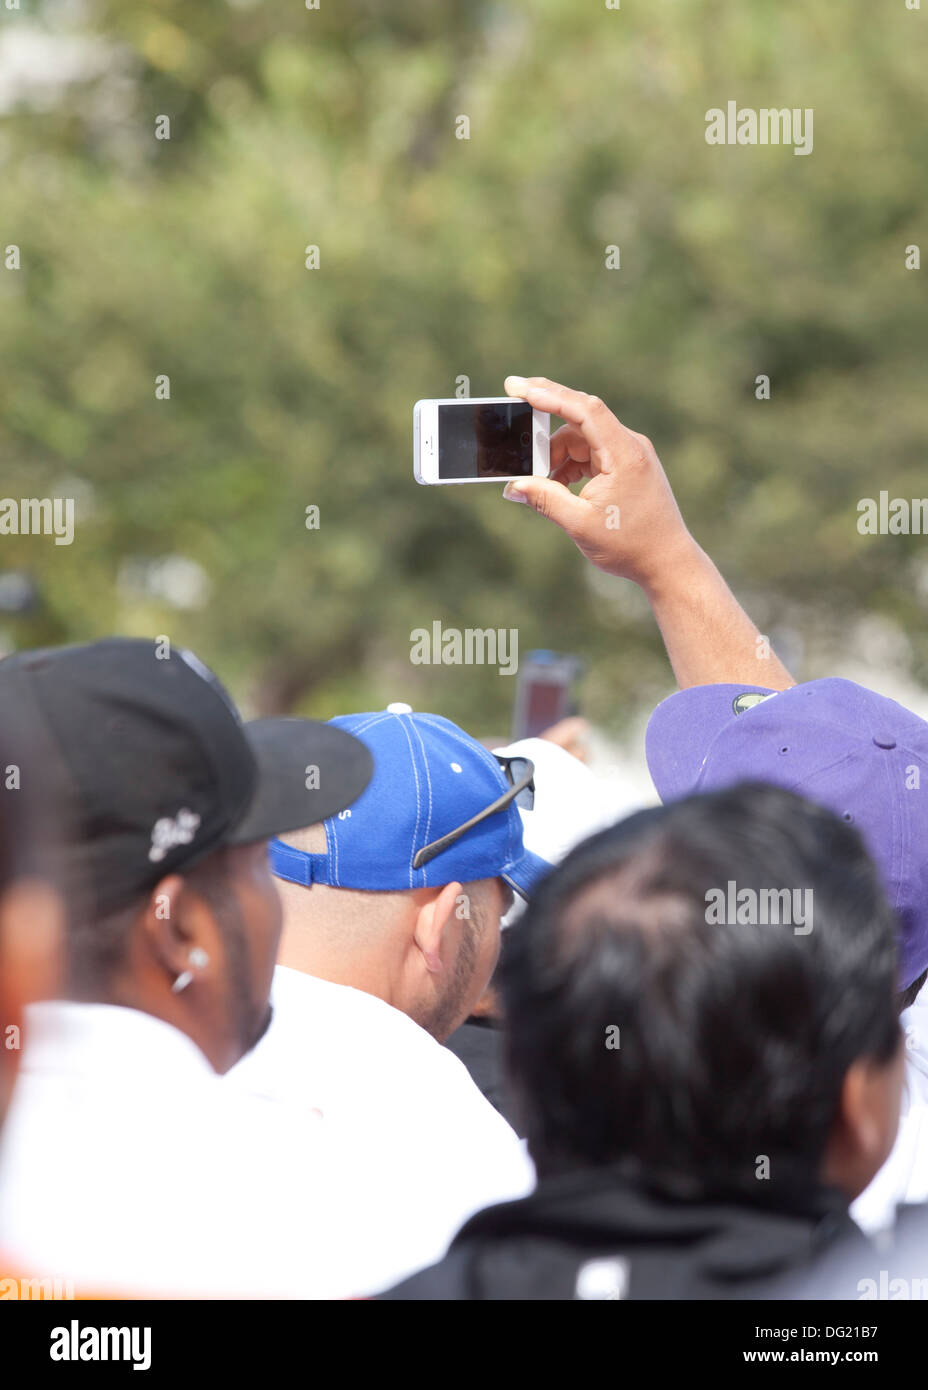 Mann mit einem iPhone Video tape ein outdoor-Event in Menschenmenge Stockfoto